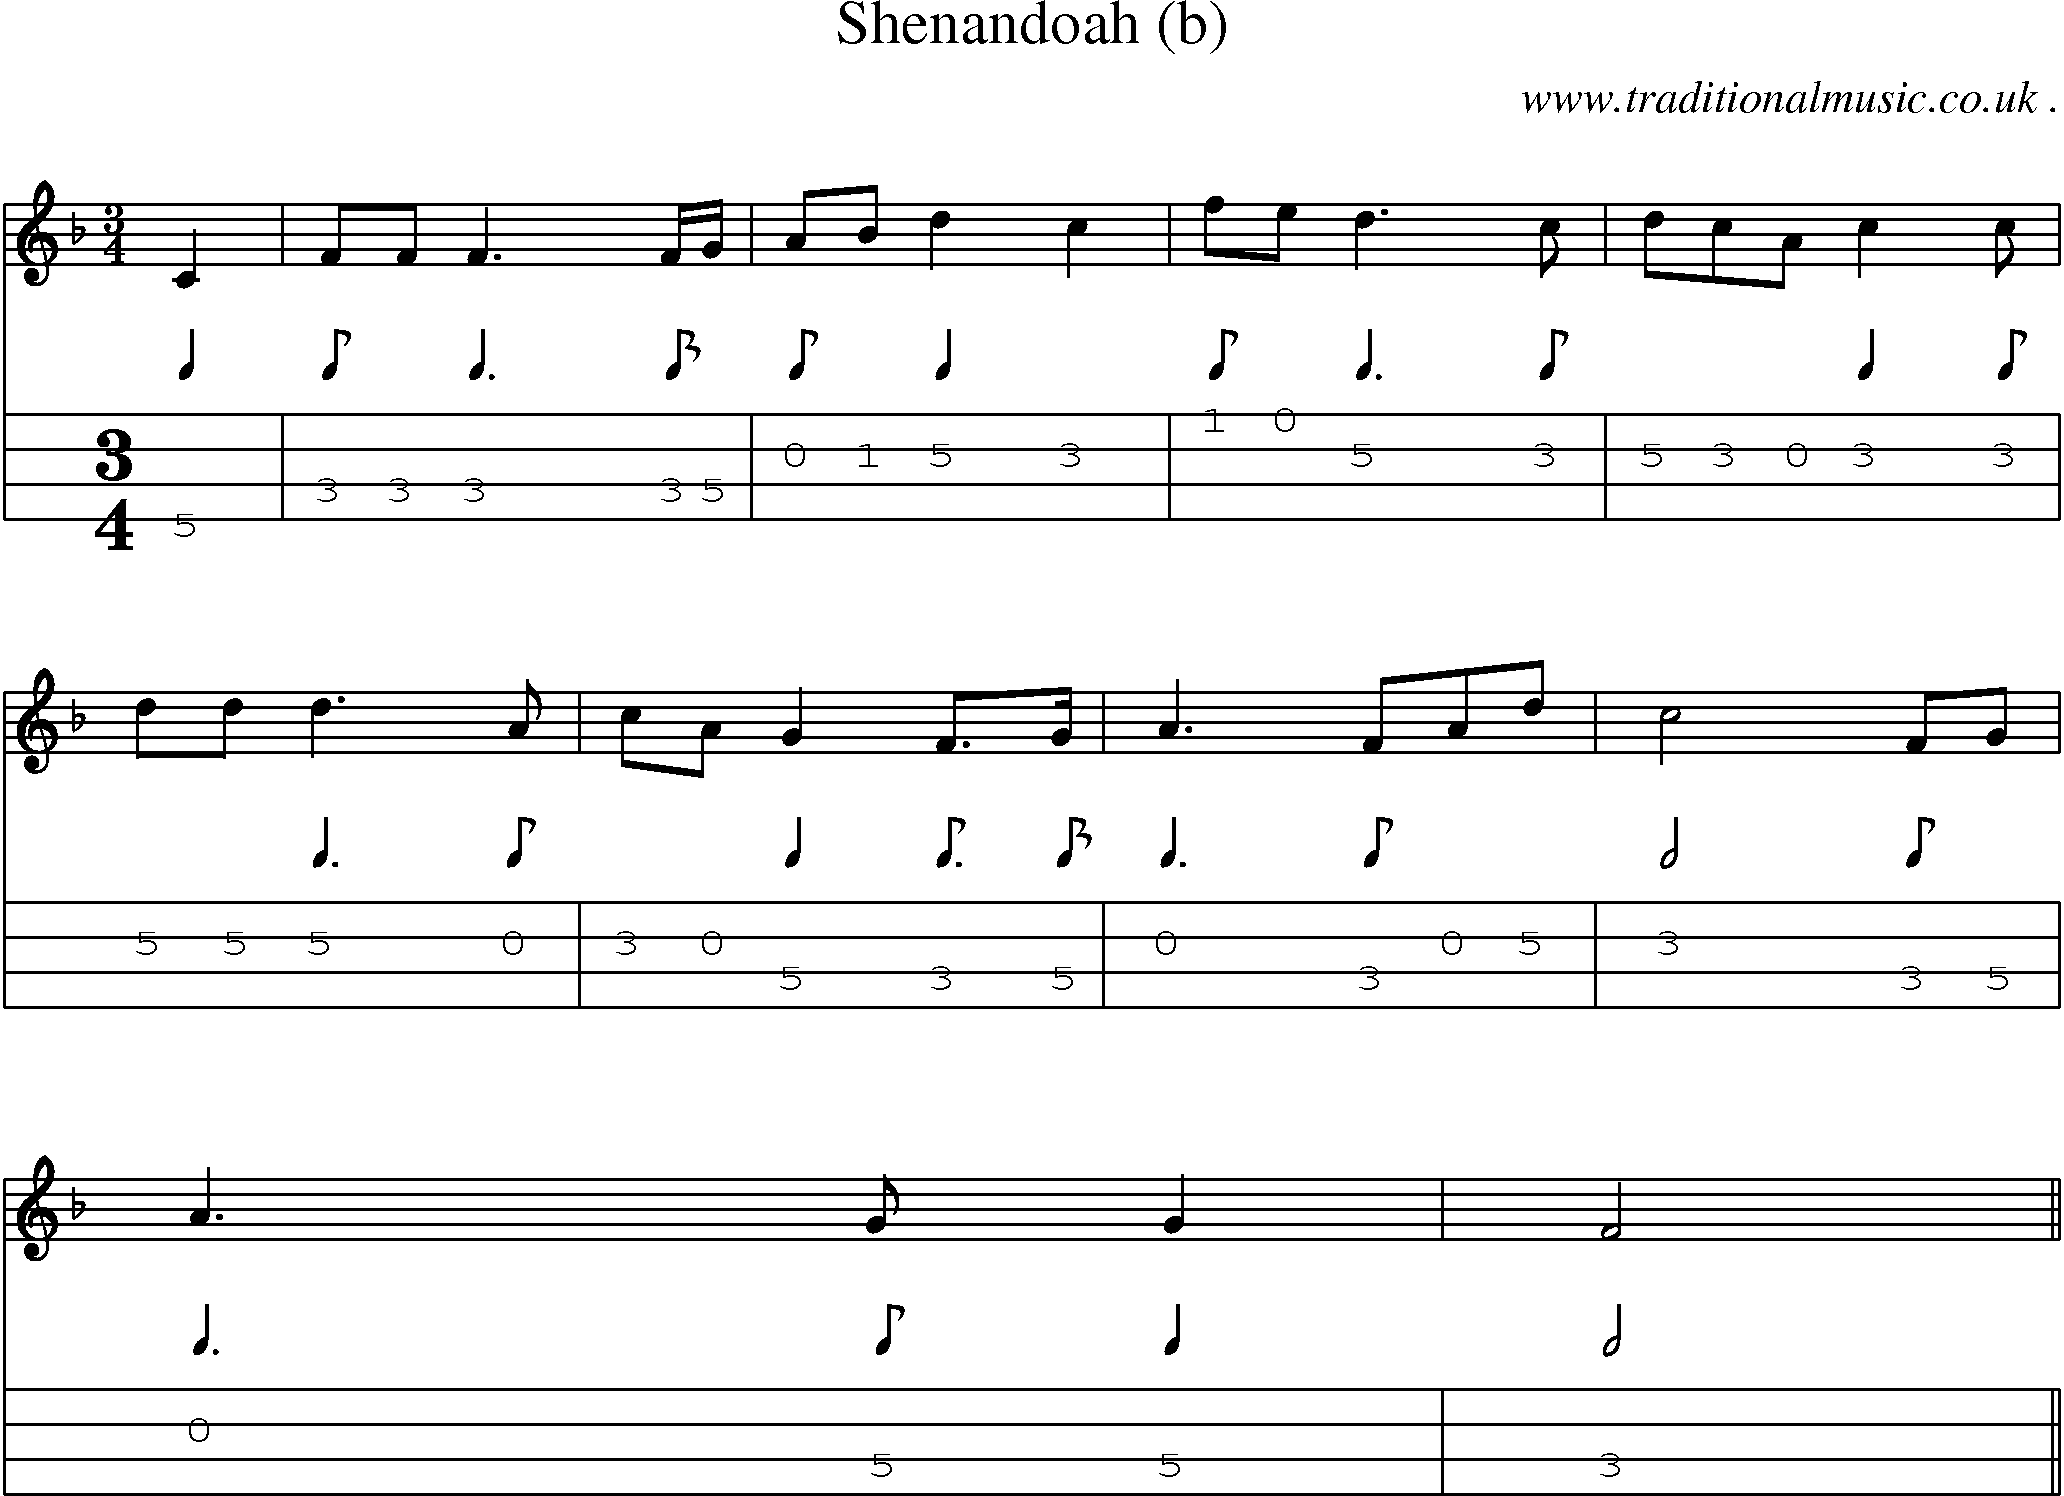 Sheet-Music and Mandolin Tabs for Shenandoah (b)